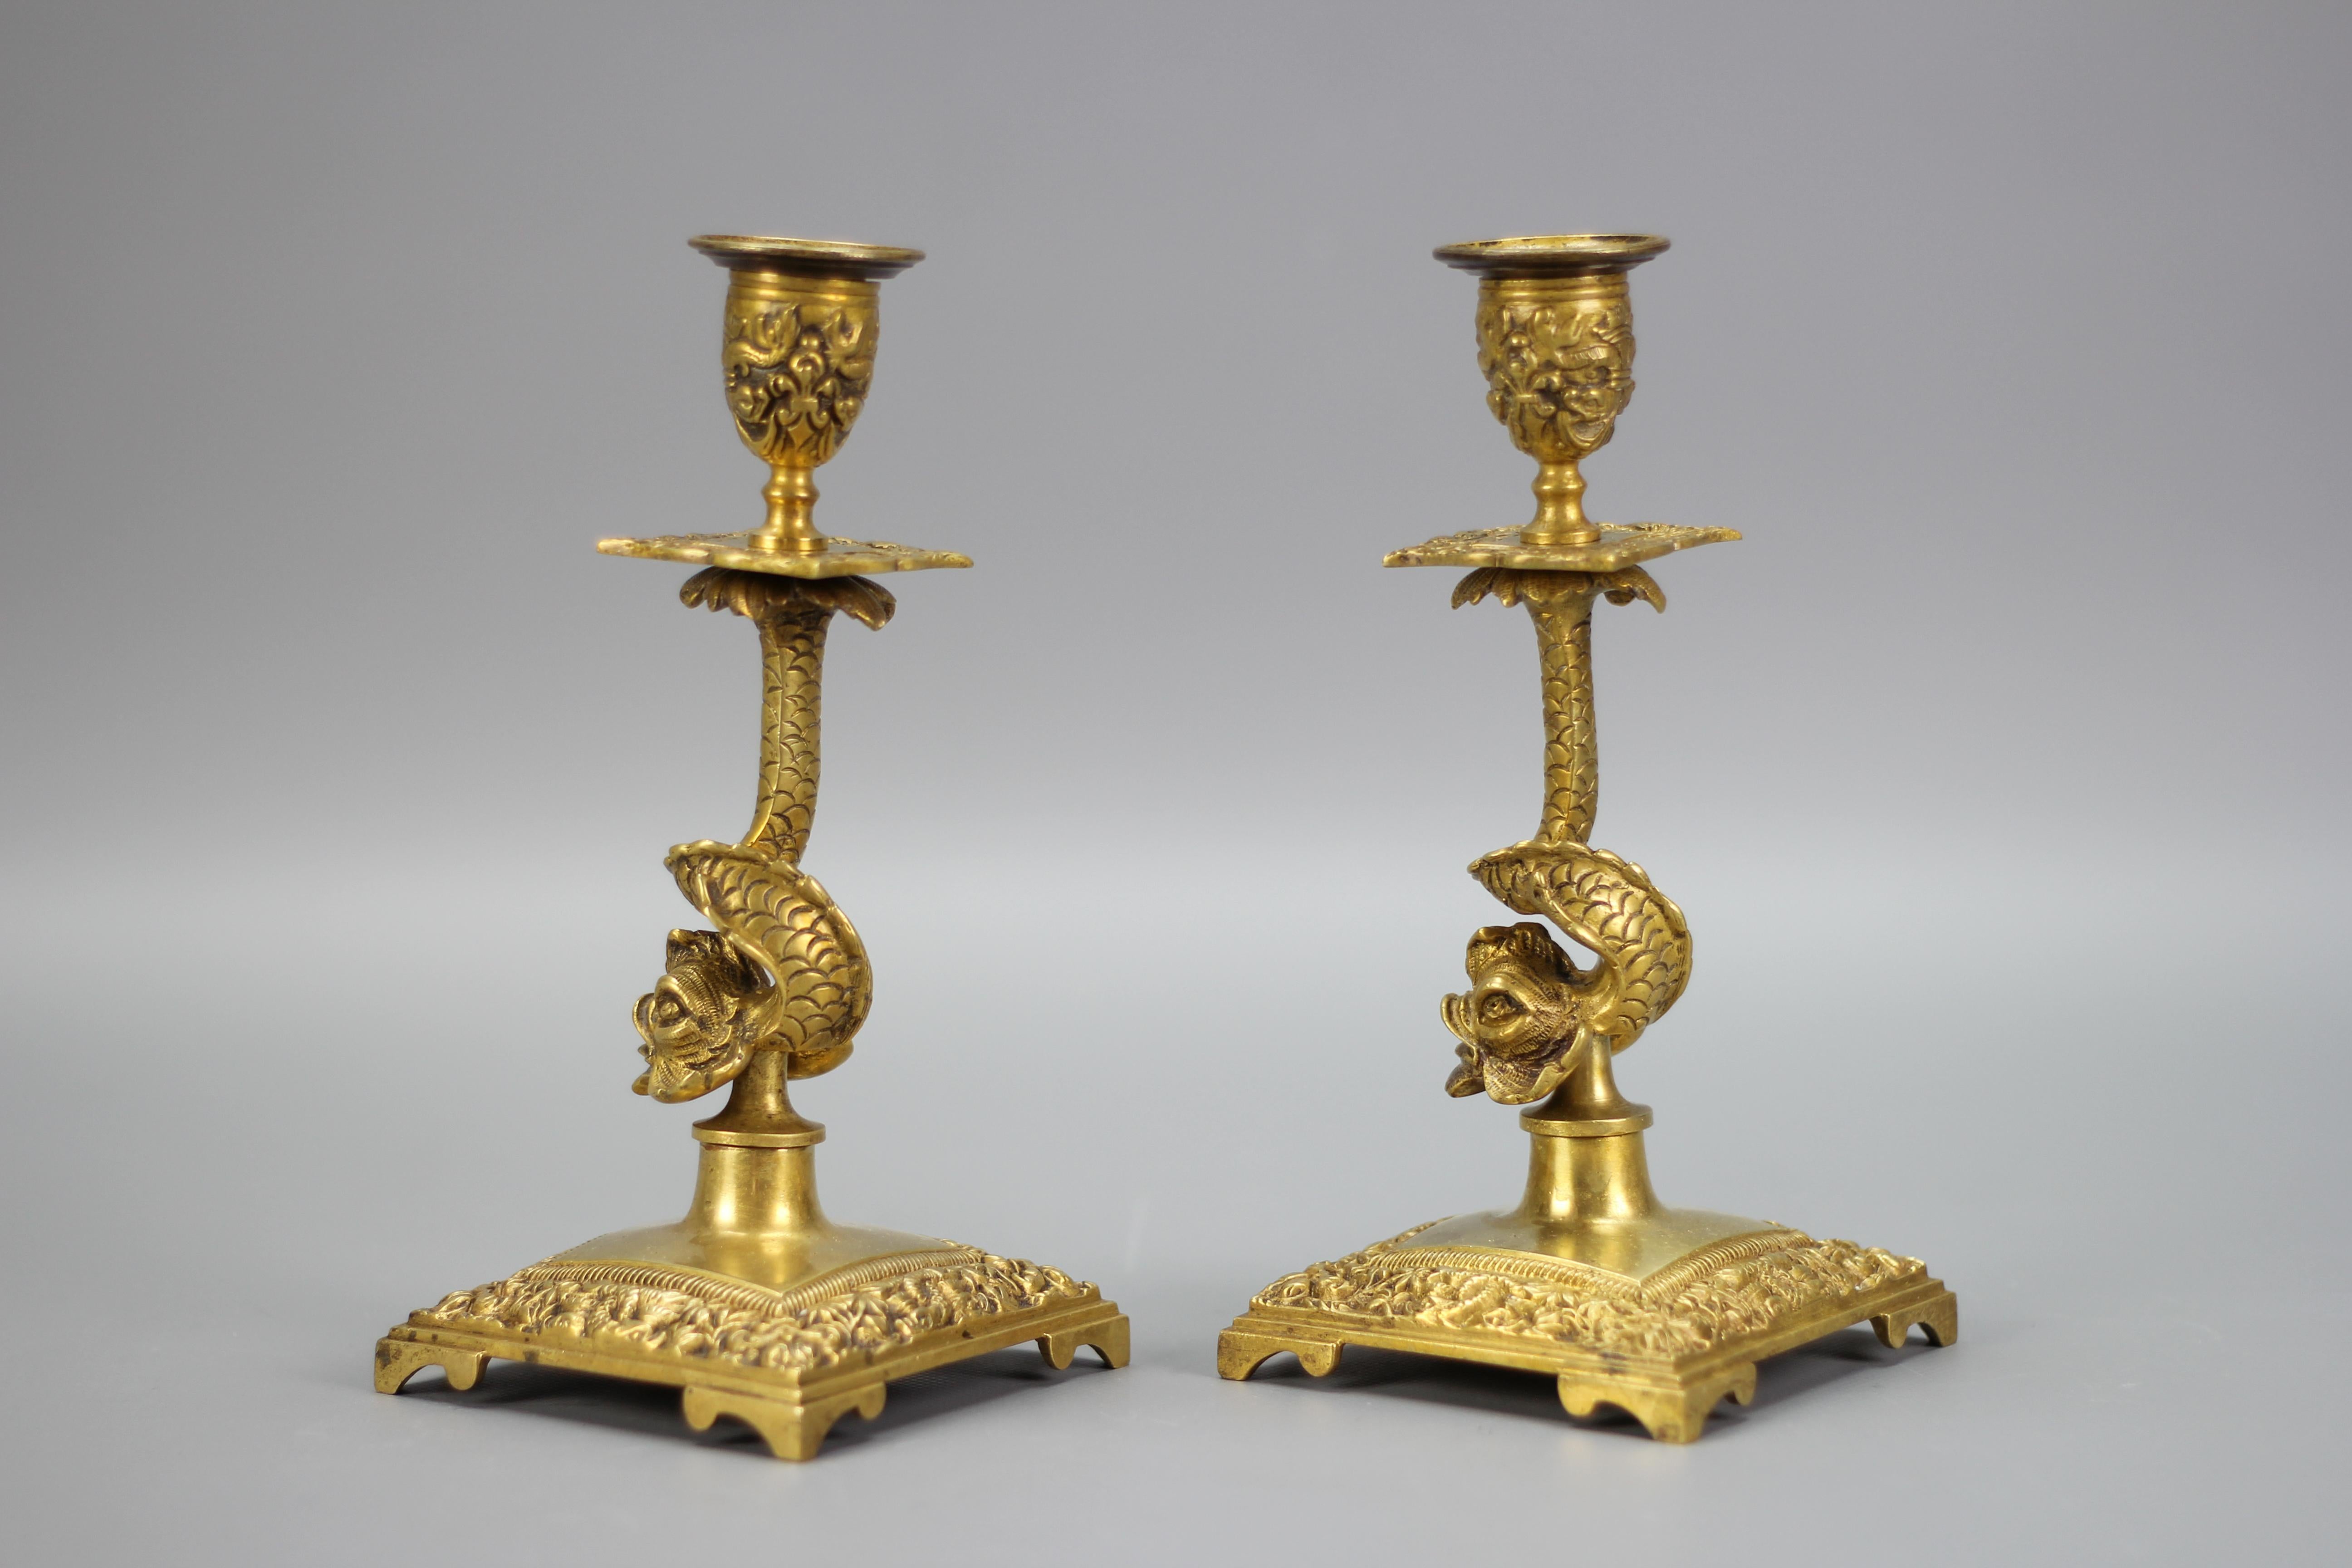 Ein Paar Kerzenhalter aus Bronze, Frankreich, um 1930.
Diese schönen Kerzenhalter aus Bronze haben jeweils eine Säule in Form eines Delphins. Die quadratischen Sockel, Wachsschalen und Kapitelle sind reich mit Blattwerk und Delphinmotiven